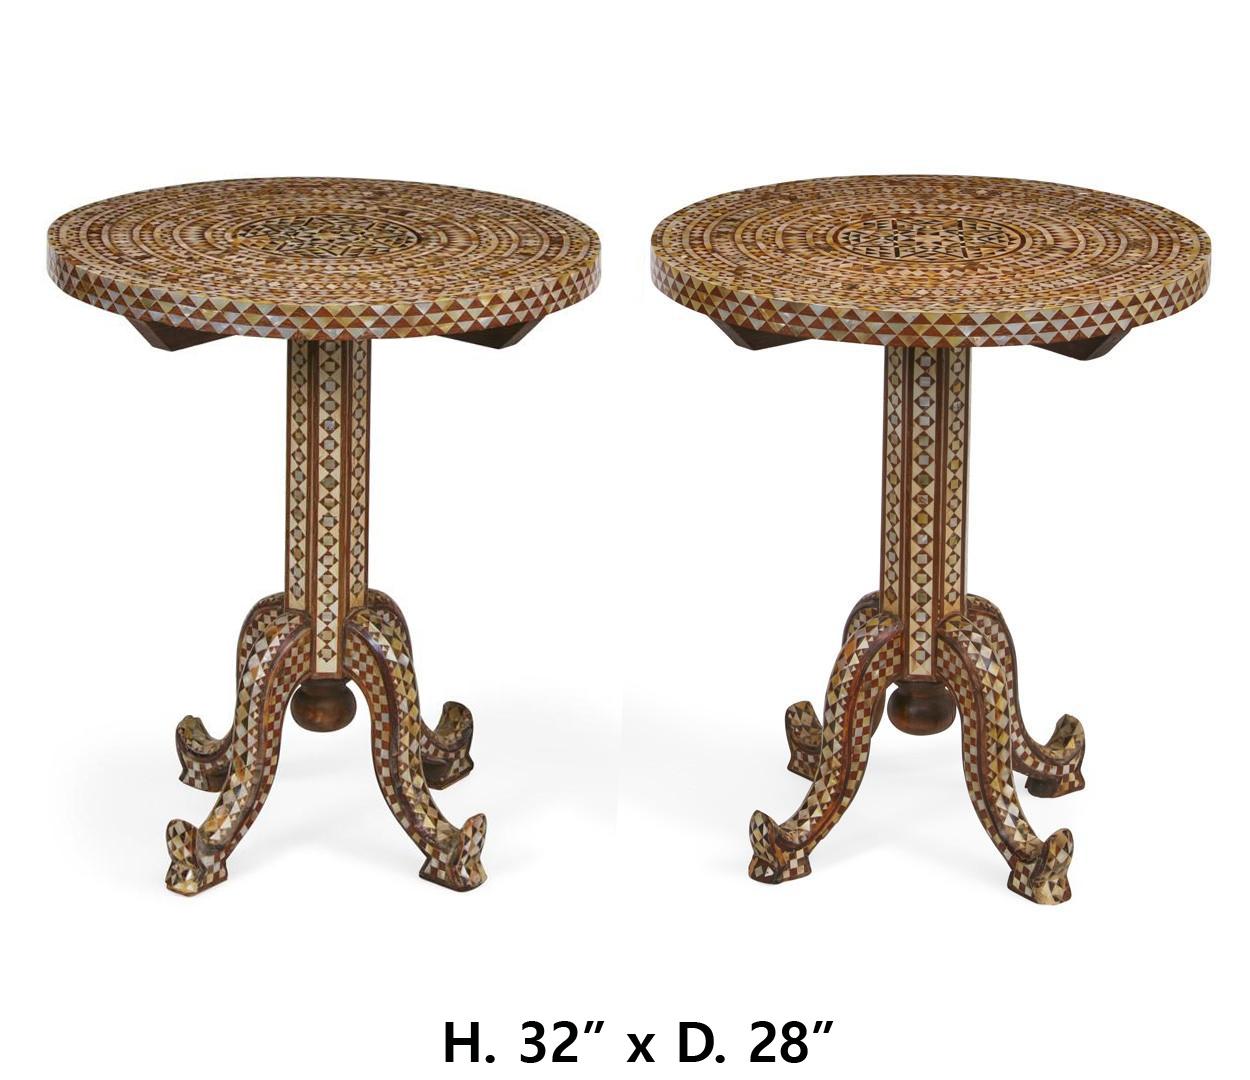 Ende des 19. / Anfang des 20. Jahrhunderts ein Paar runde Tische mit Perlmutt-, Muschel- und Hornintarsien aus Levante.
Die runde Platte auf dem Sockel endet in vier Beinen. 
- •	Abmessungen: Höhe 32